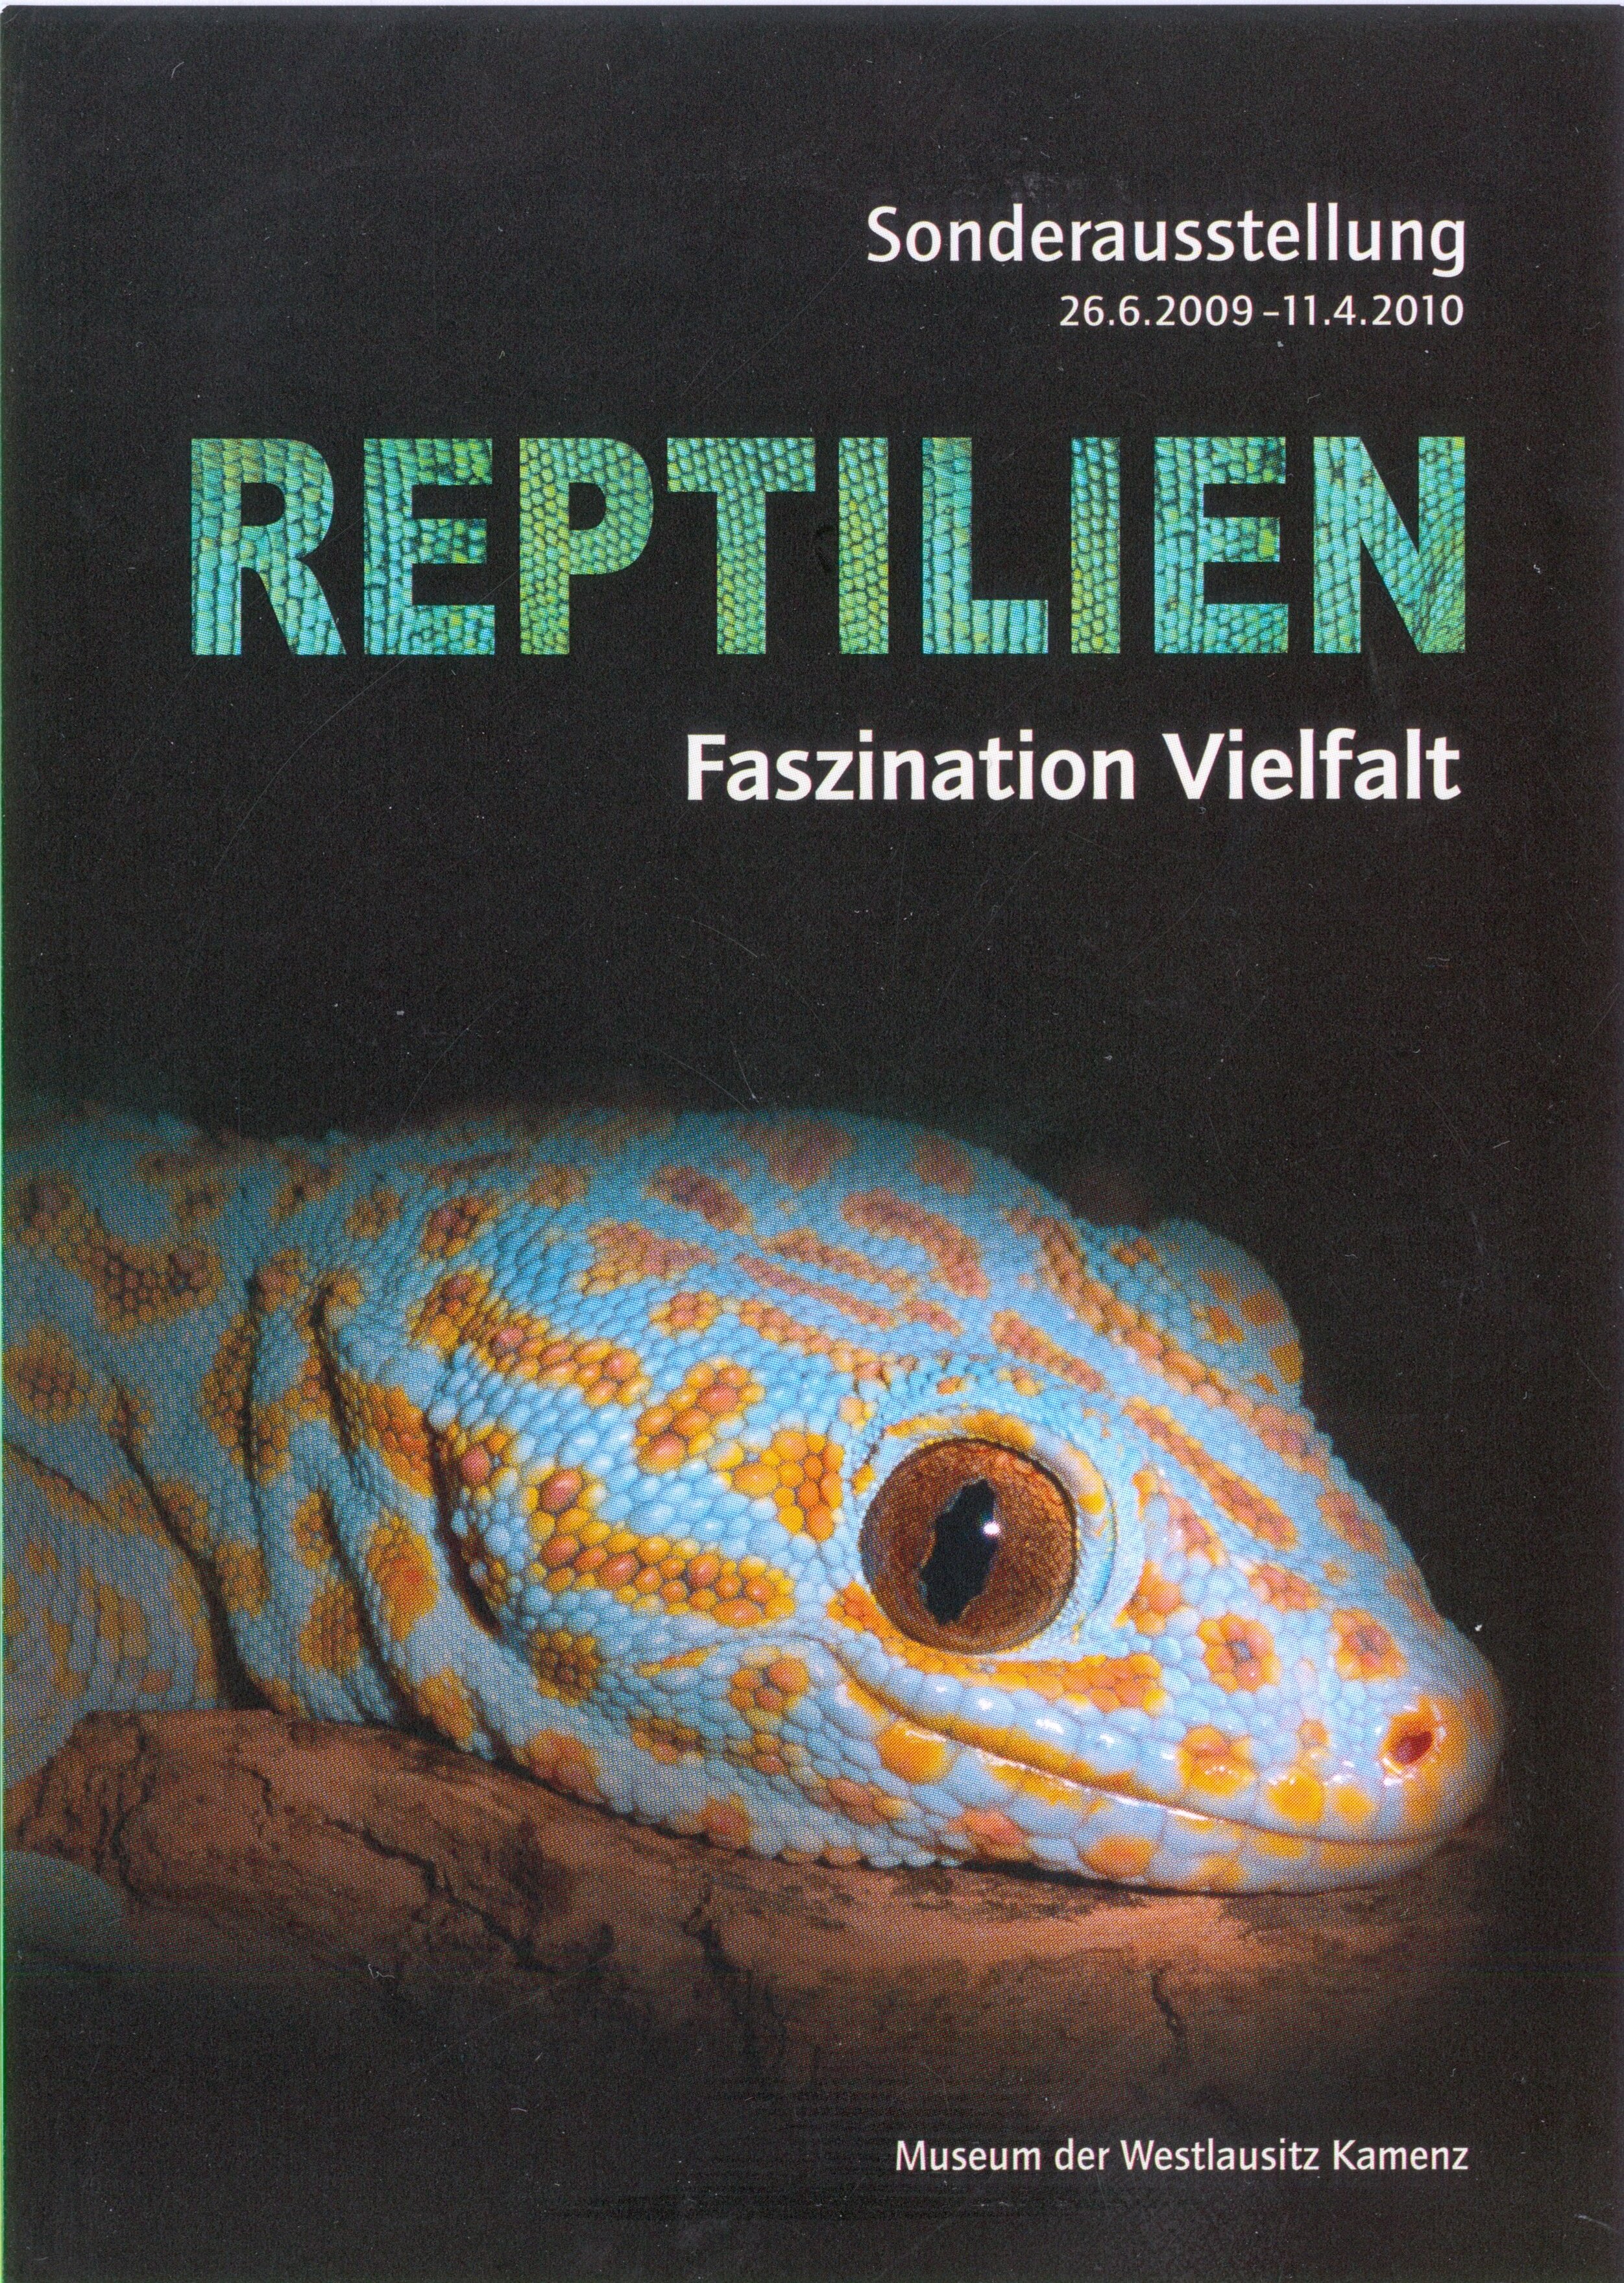 Postkarte zur Somderausstellung Reptilien in Kamenz 2009 (Elementarium Kamenz CC BY-NC-SA)